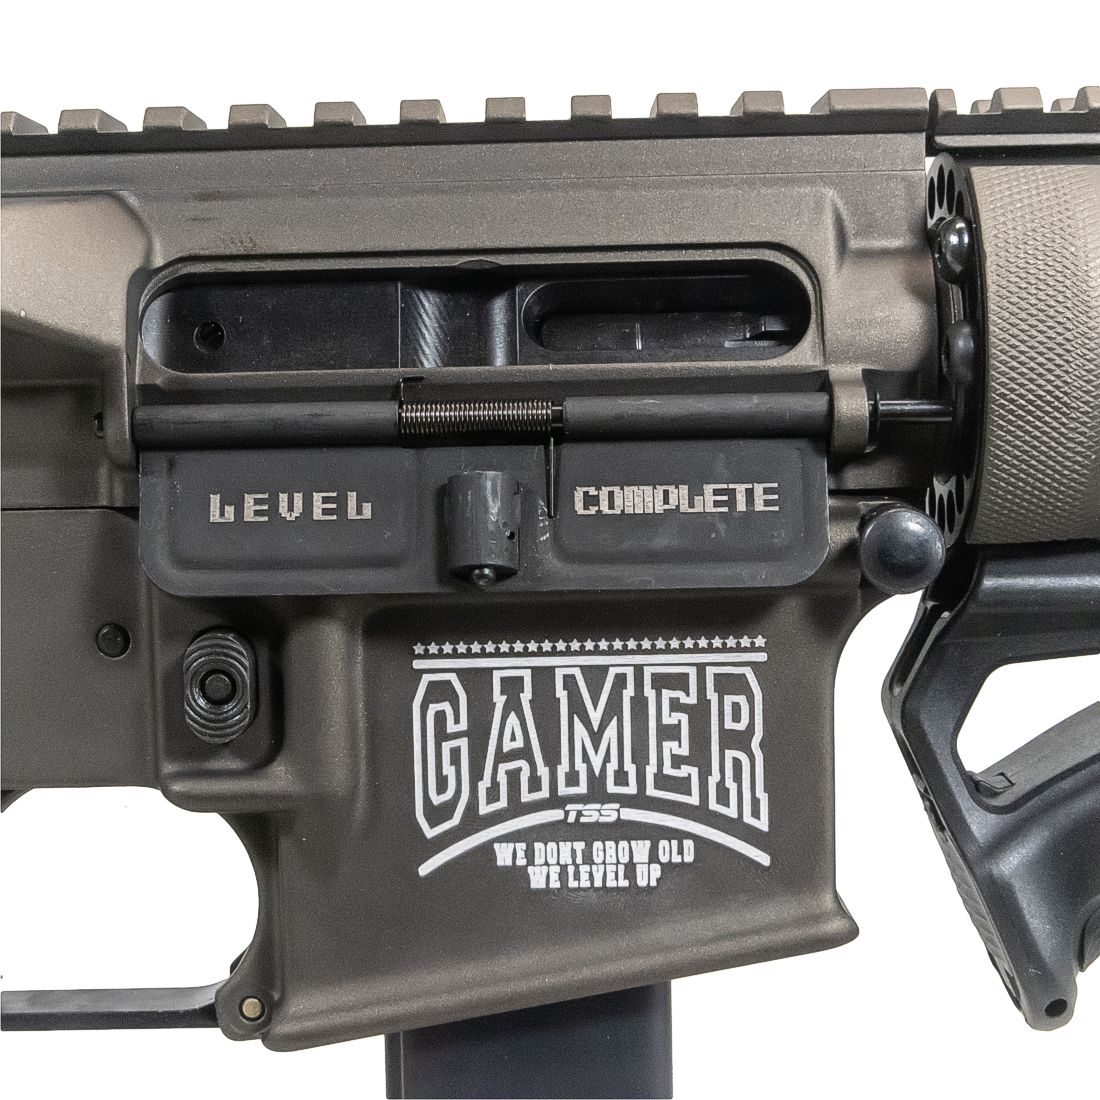 TSS CUSTOM AR 15 9mm LIMITED EDITION Pistol "Gamer" - Texas Shoot...